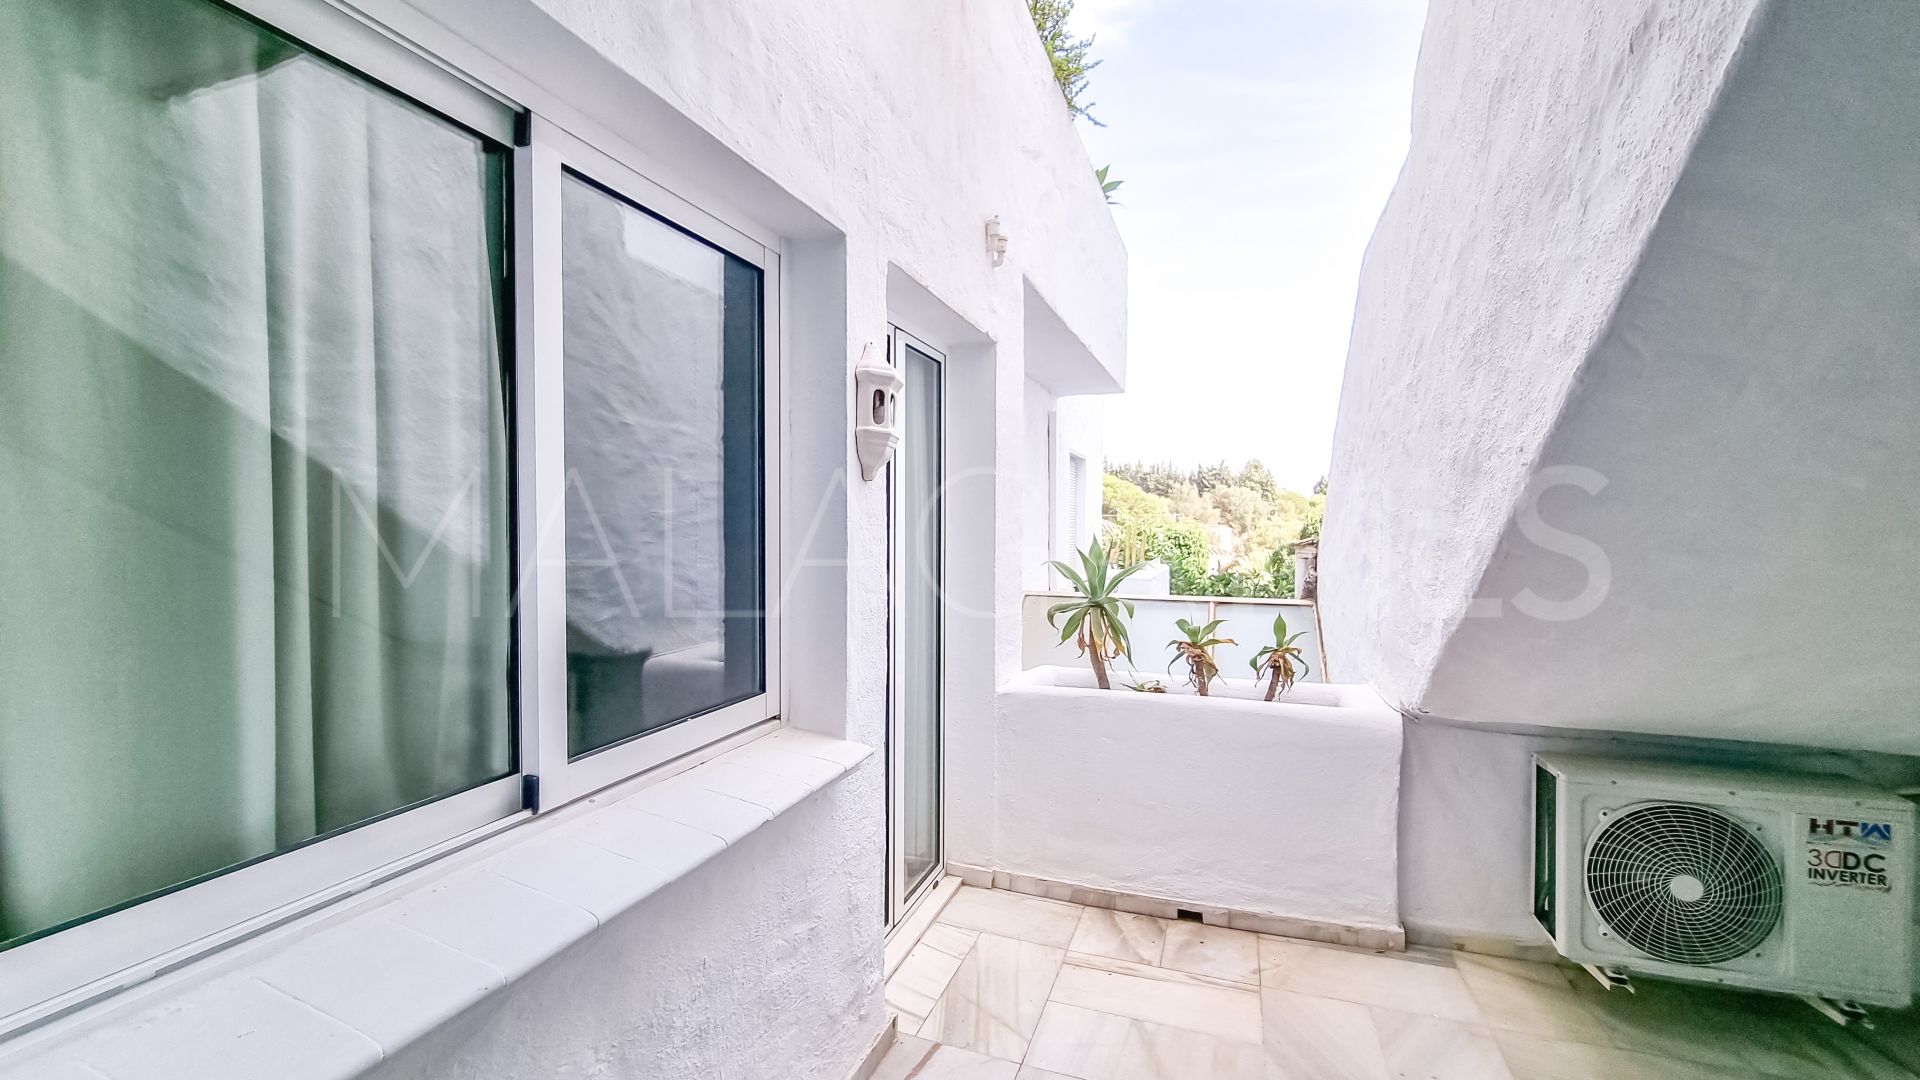 Marbella - Puerto Banus, villa for sale